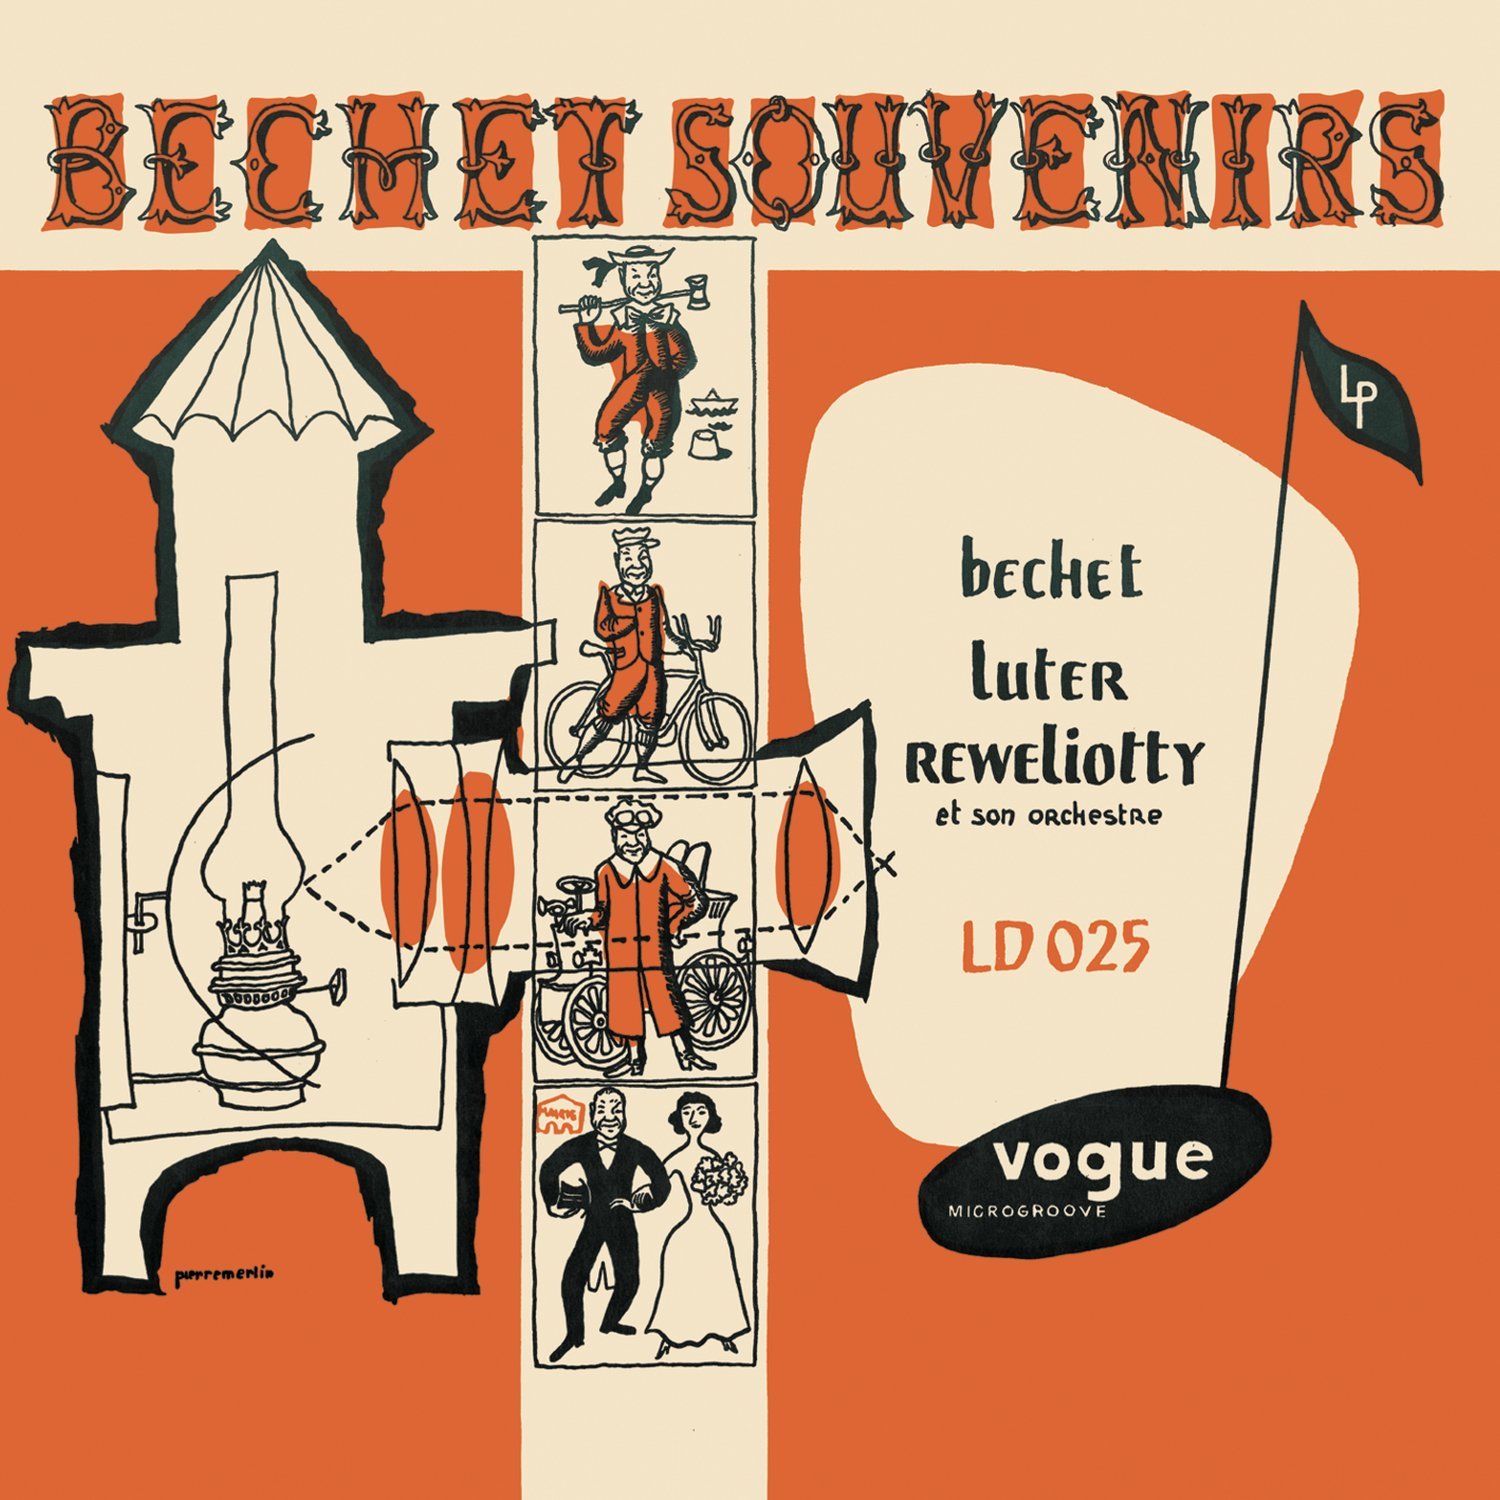 Bechet Souvenirs | Sidney Bechet